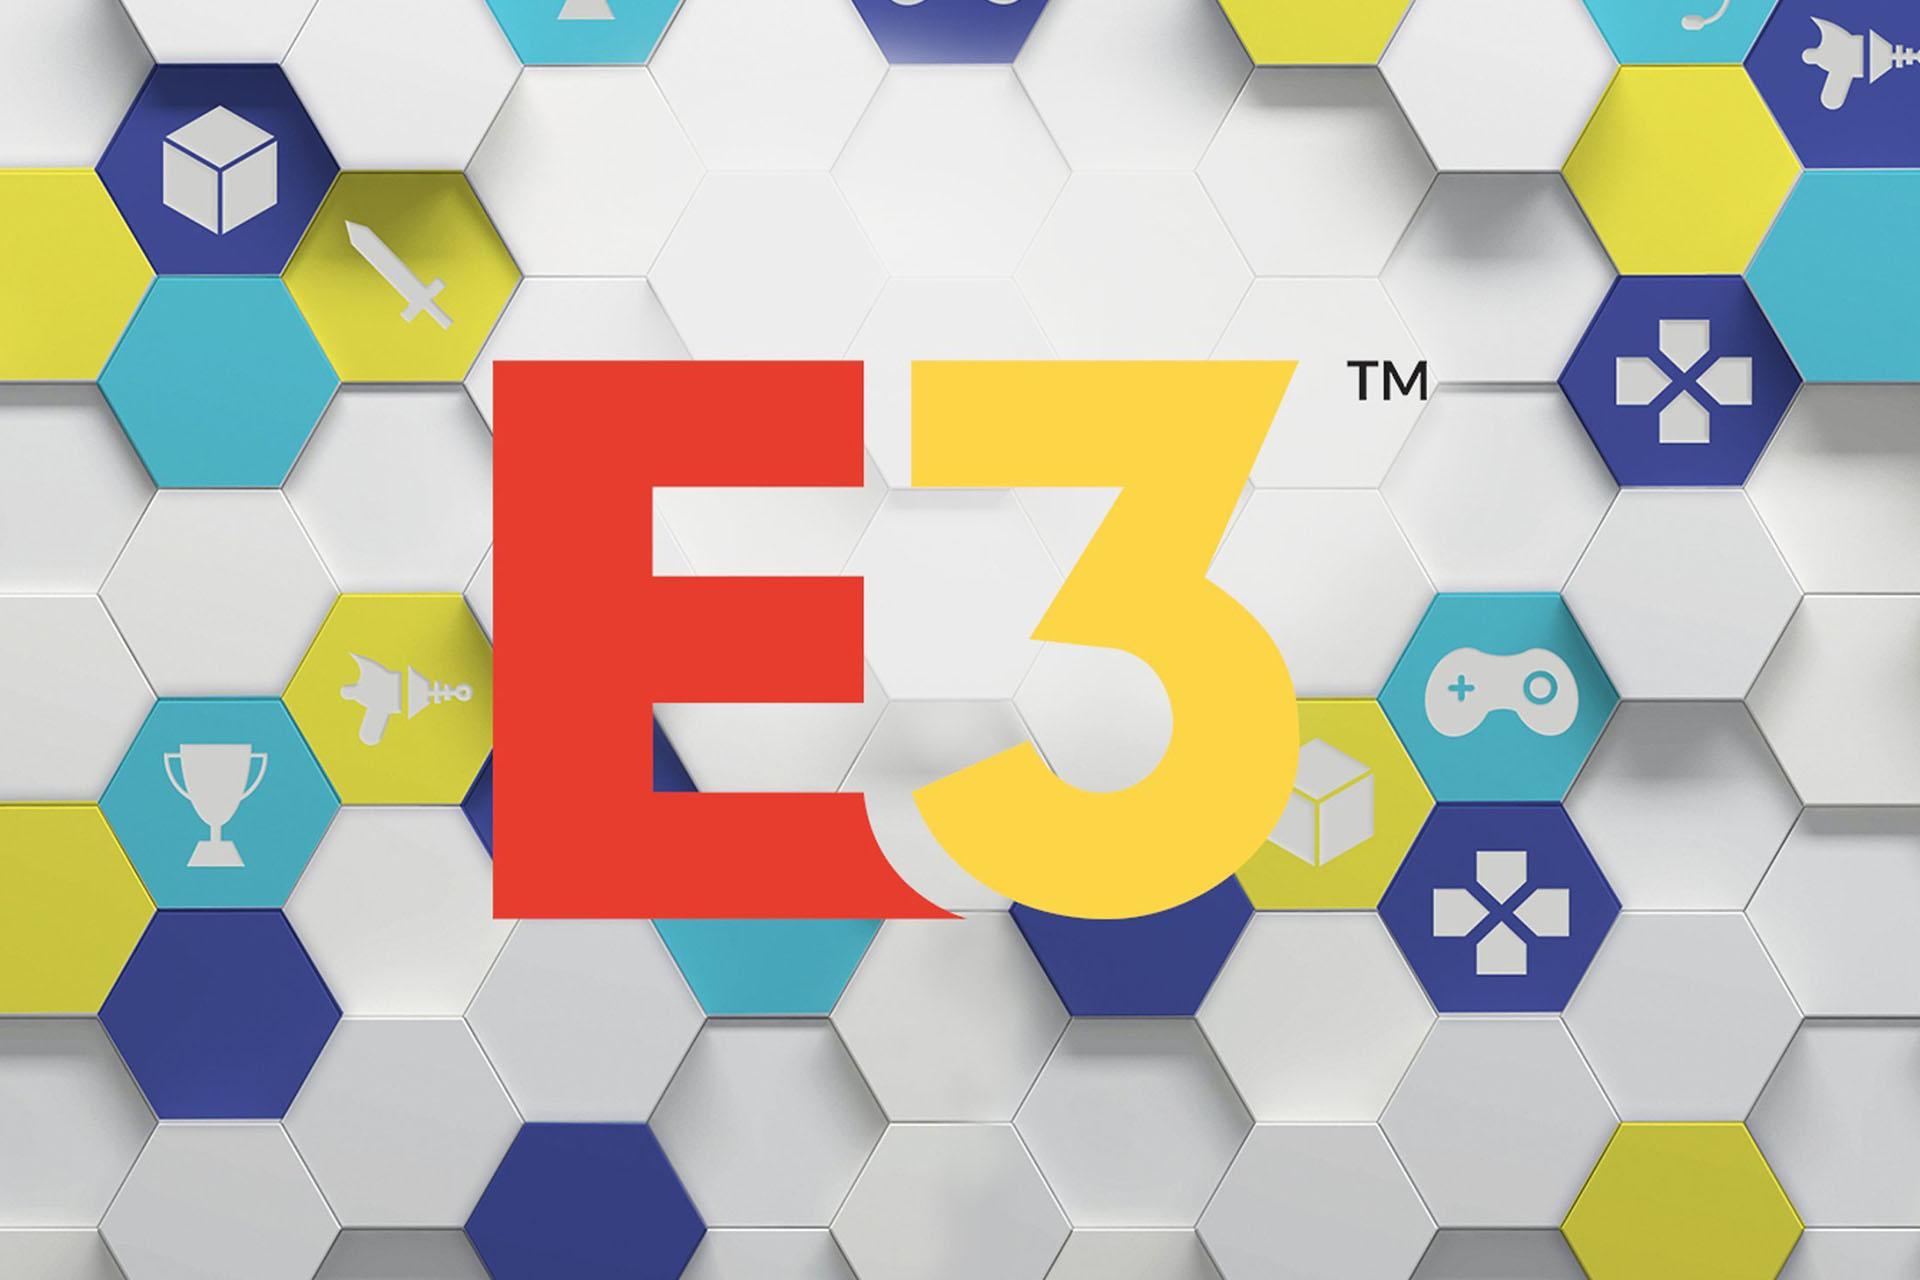 زمان برگزاری نمایشگاه E3 2020 مشخص شد